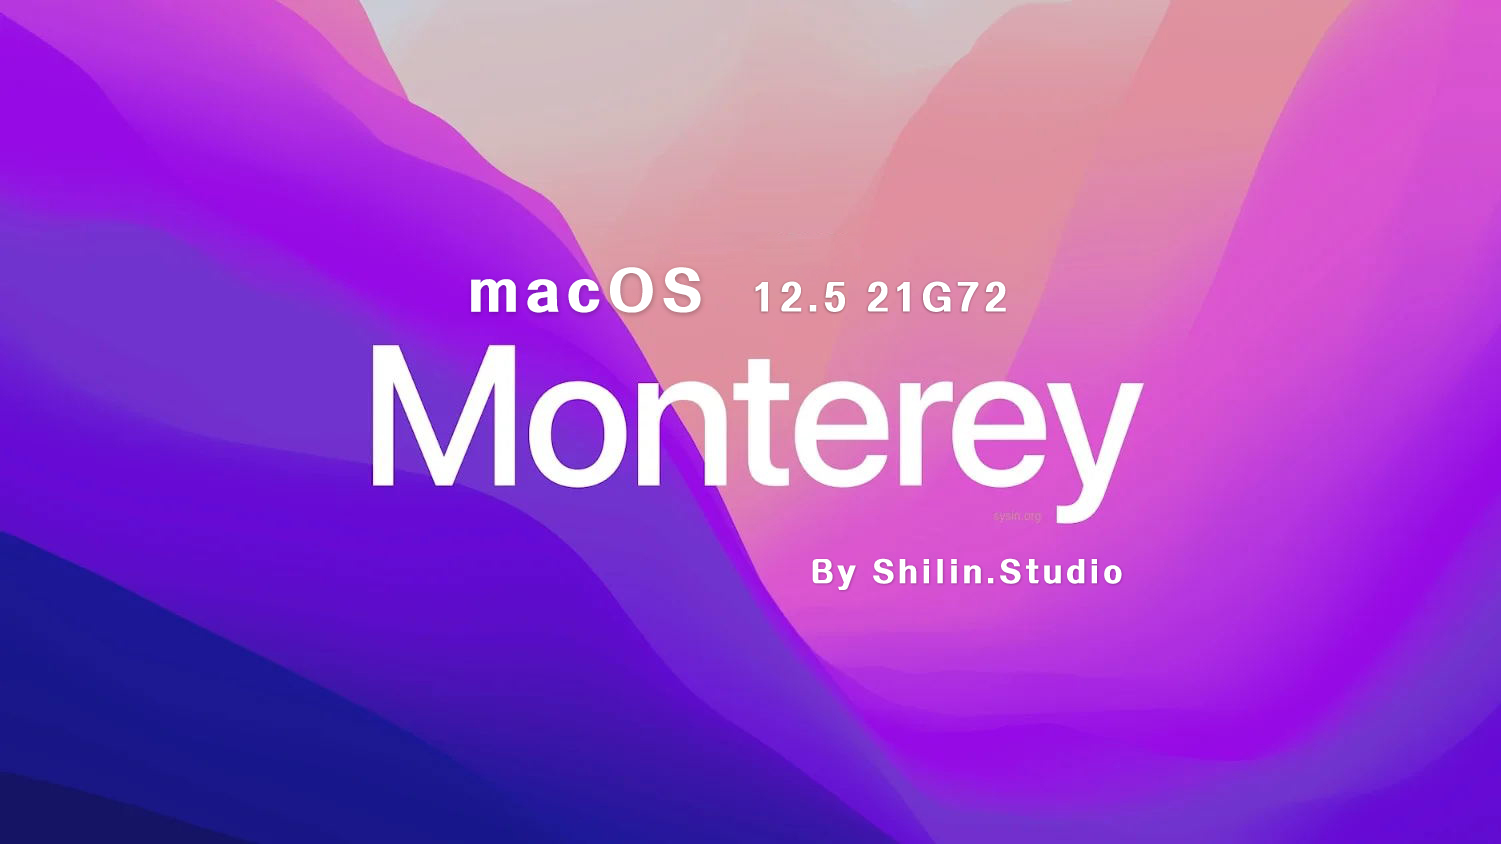 [macOS]macOS_Monterey_12.5_21G72_For_Shilin.Studio.iso可引导可虚拟机安装镜像包（已修复引导并优化）